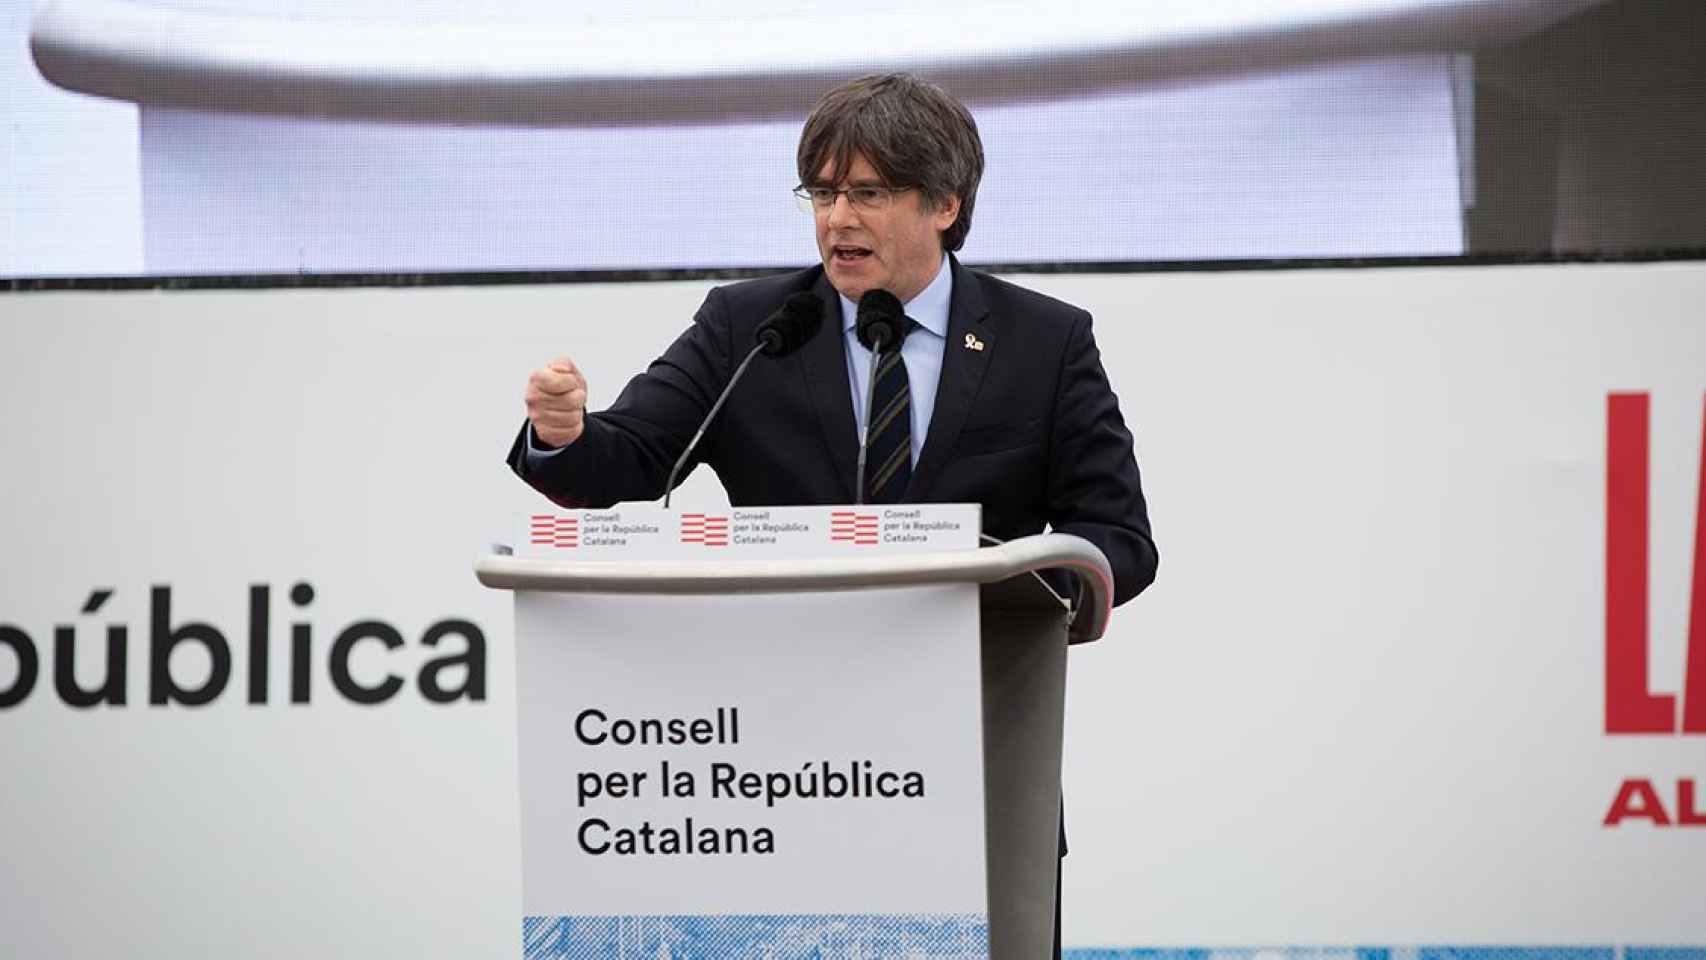 El expresidente de la Generalitat de Cataluña Carles Puigdemont, en el acto del Consell per la República en Perpiñán (Francia) el 29 de febrero de 2020 / EUROPA PRESS